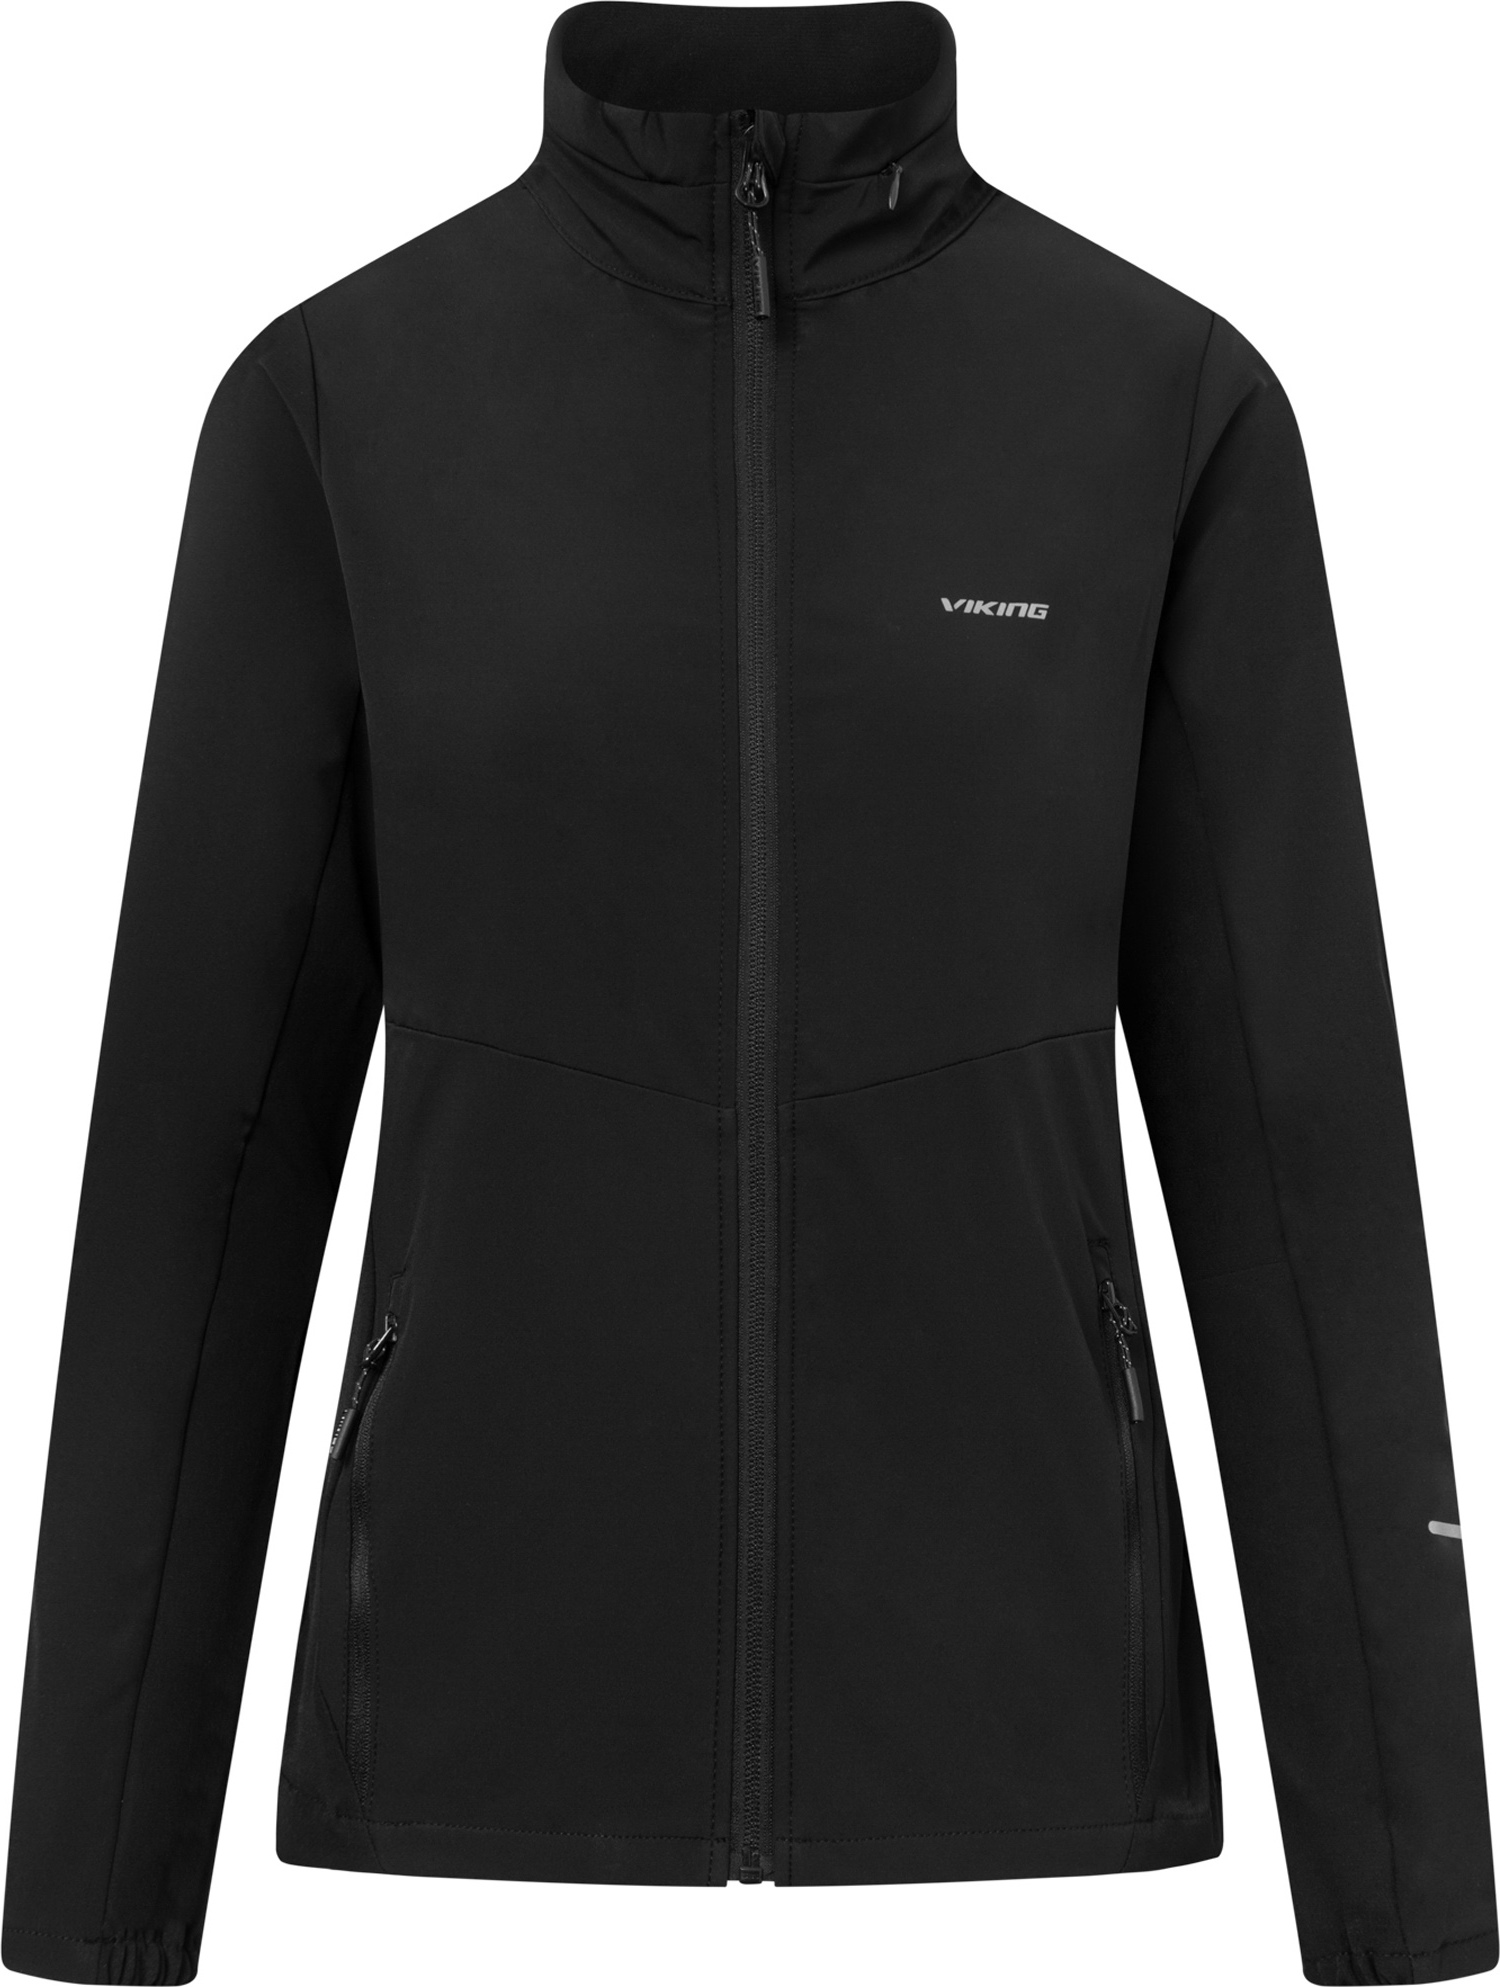 Dámská outdoorová bunda VIKING Acadia černá Velikost: XL